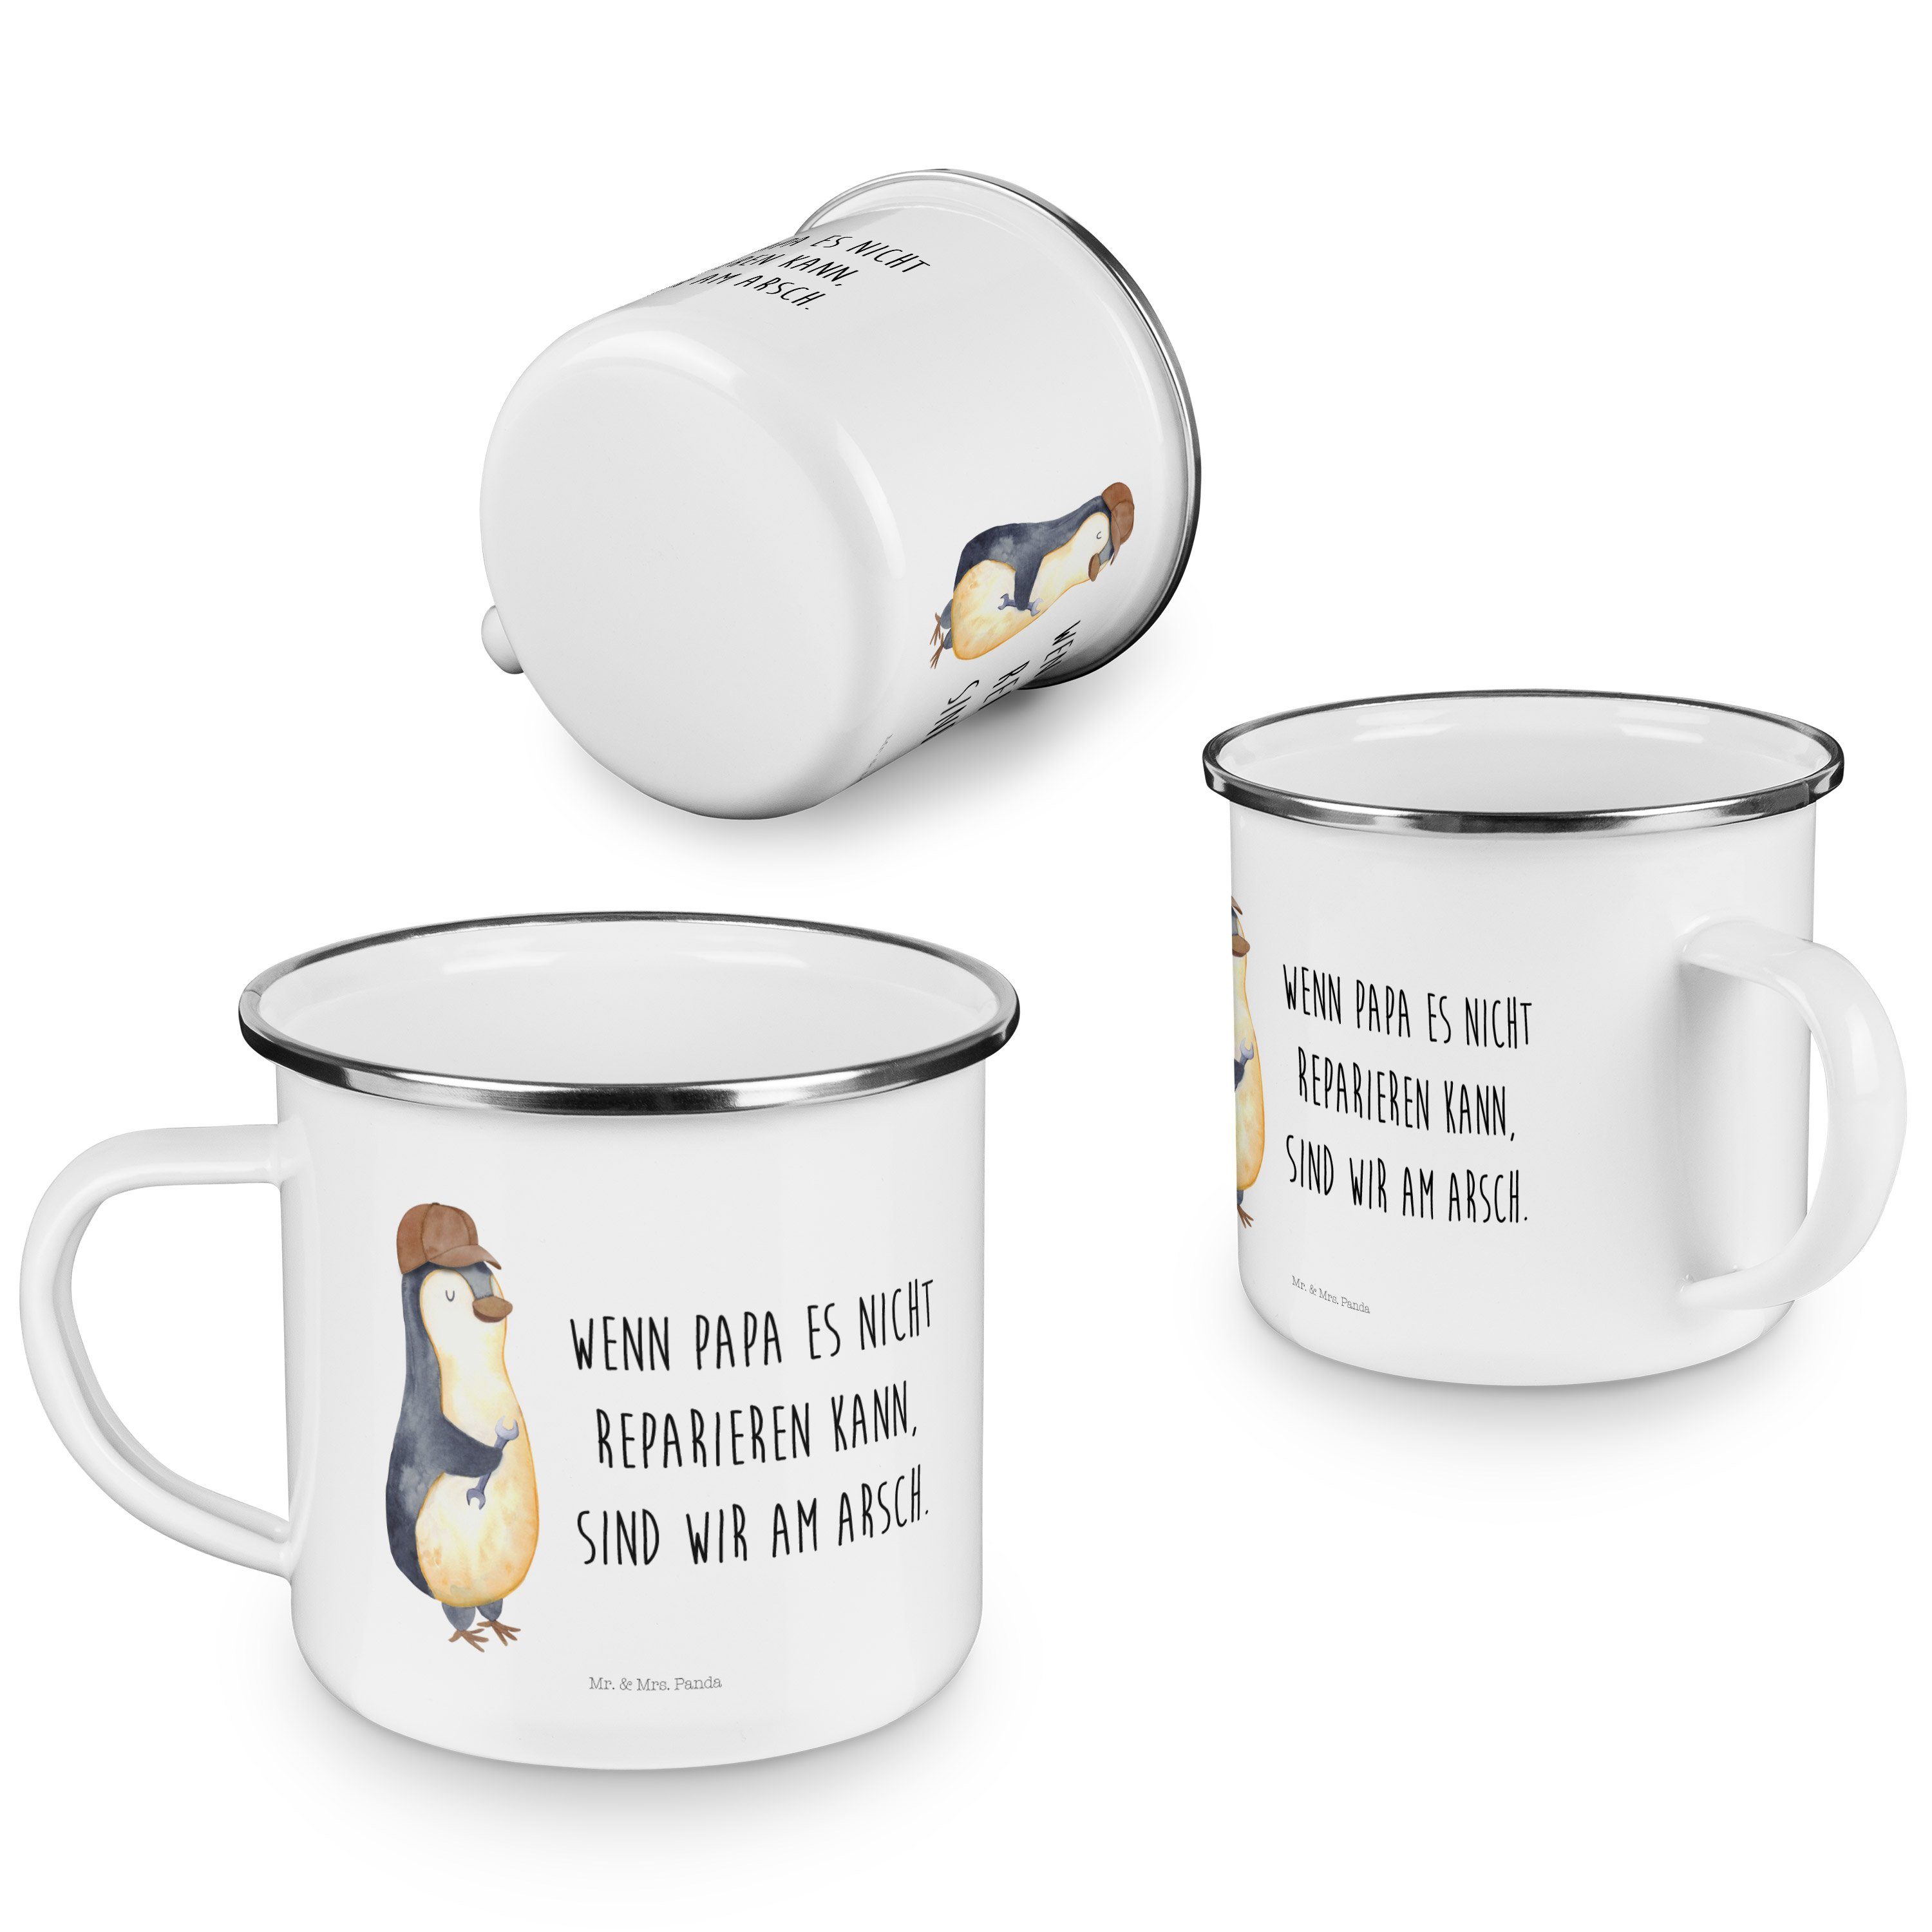 Mr. & Kaffee, Weiß Emaille - Becher mit Selbstliebe, - Geschenk, Schraubenschlüssel Panda Pinguin Mrs